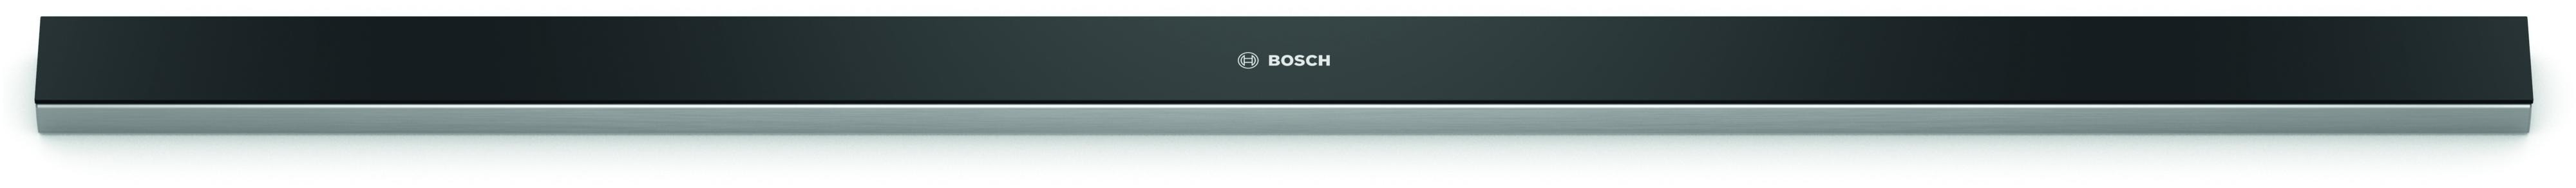 Bosch DSZ4986 Afzuigkap accessoire Zwart